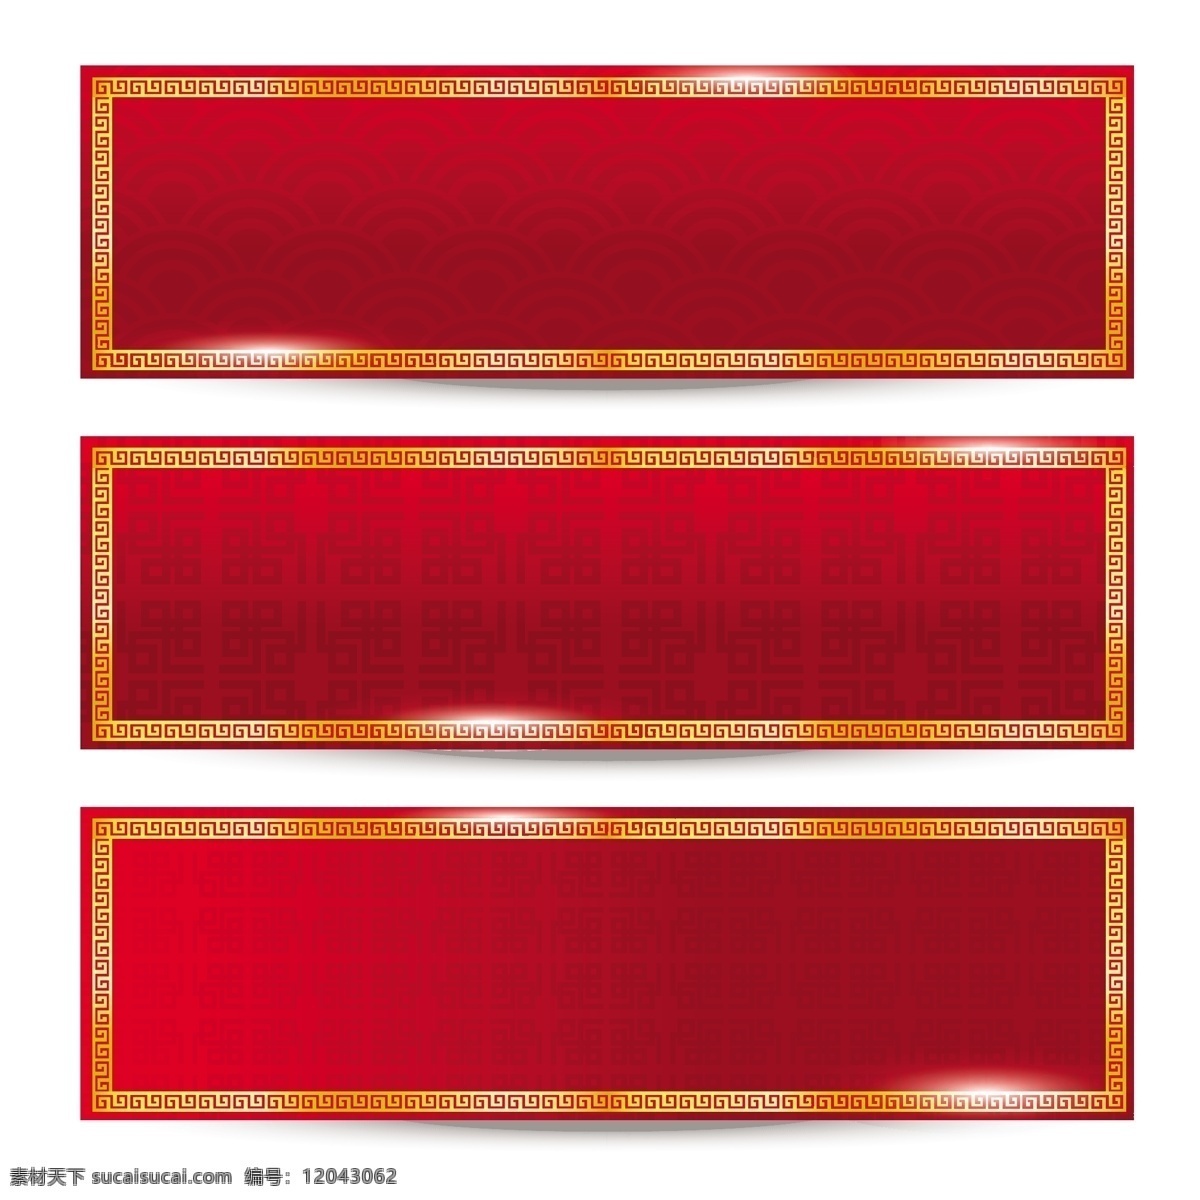 花纹 中国 传统 纹理 背景 矢量 红色 框框 简约 卡通 设计素材 平面素材